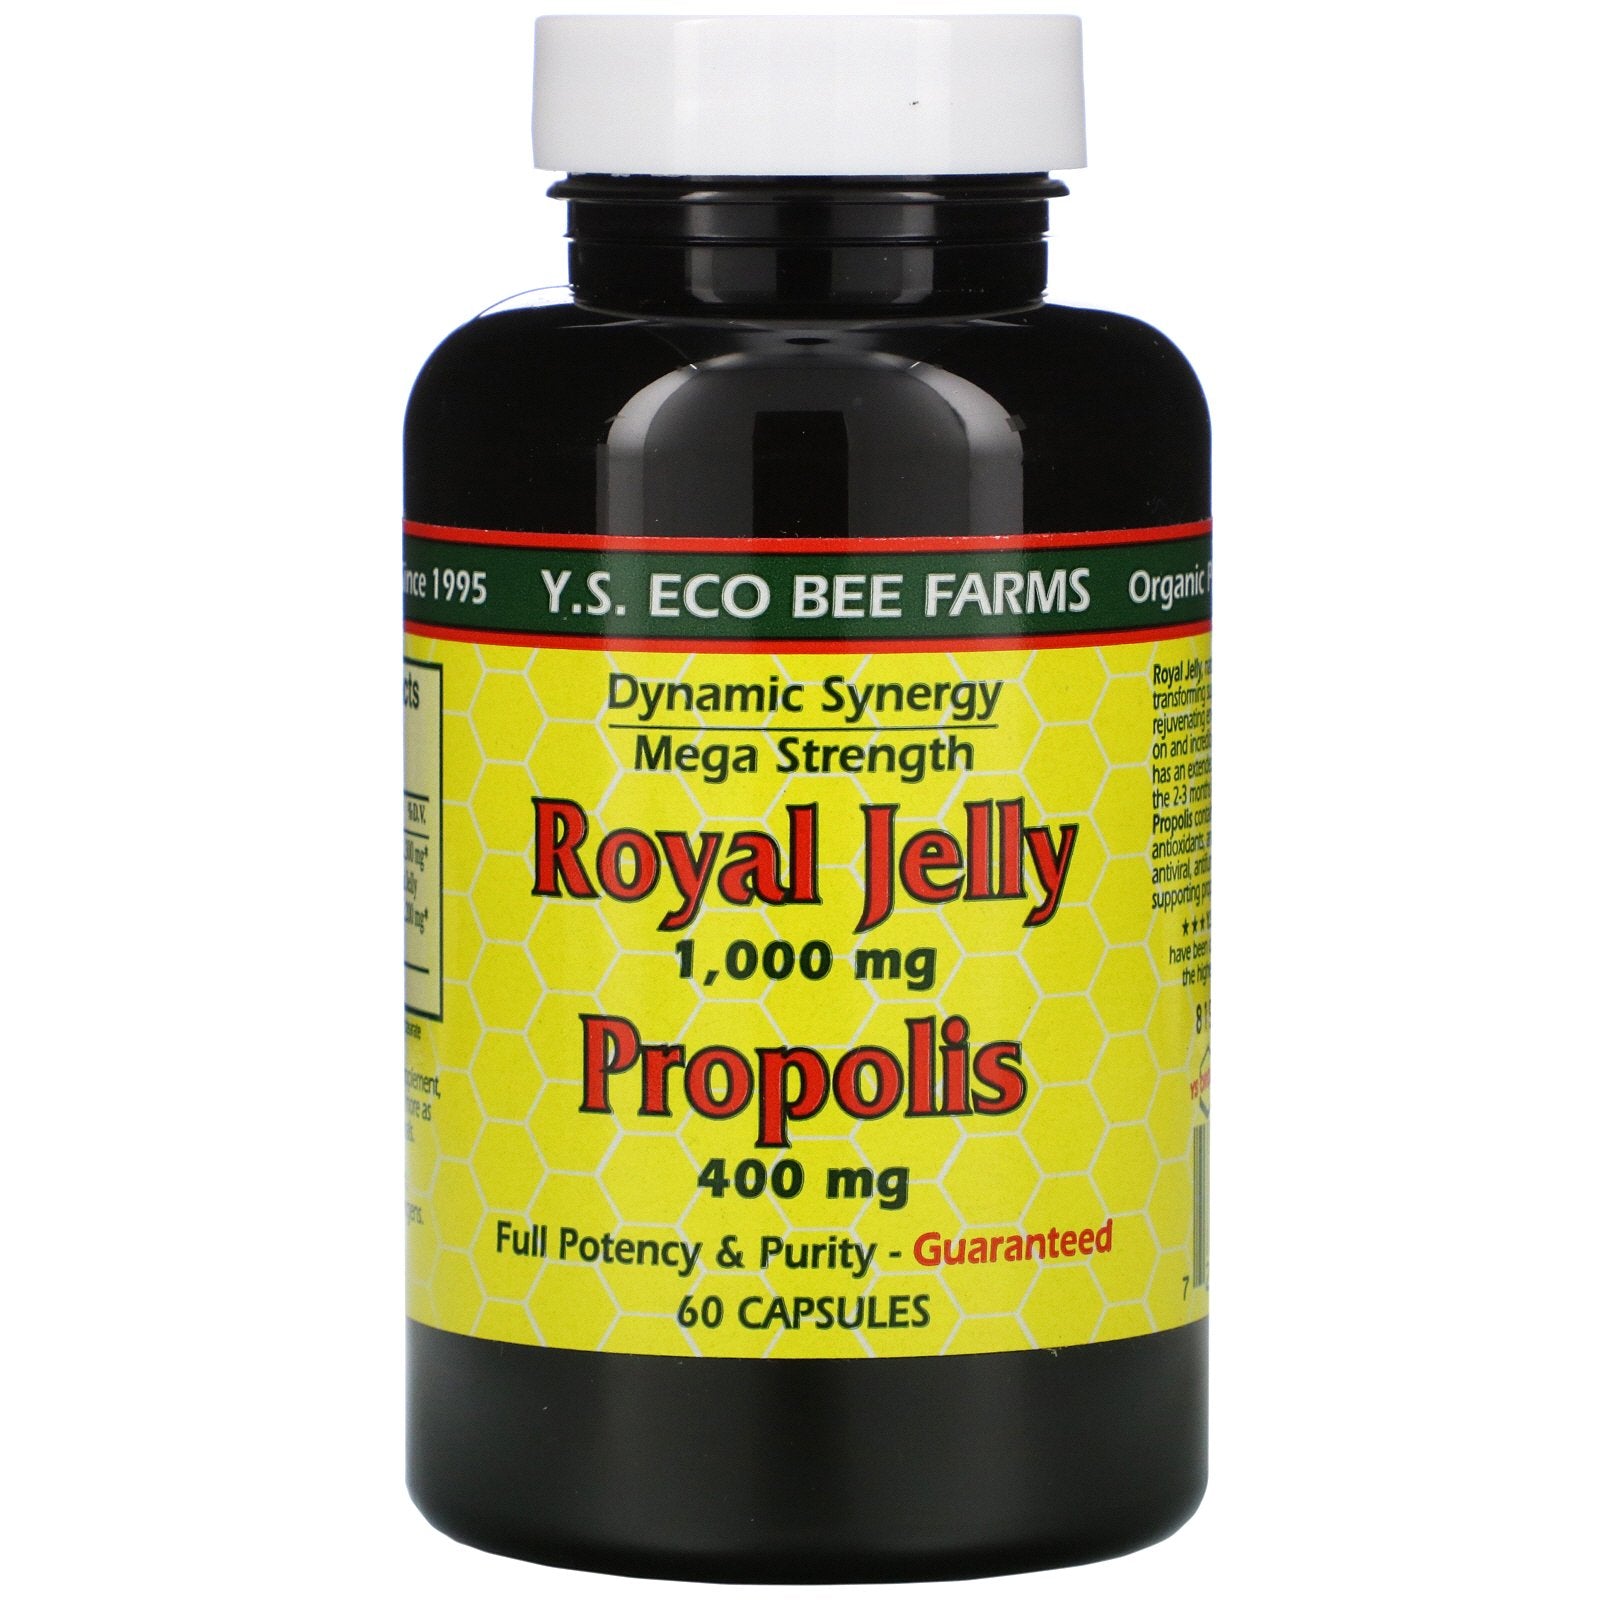 Y.S. Eco Bee Farms, Royal Jelly, Propolis